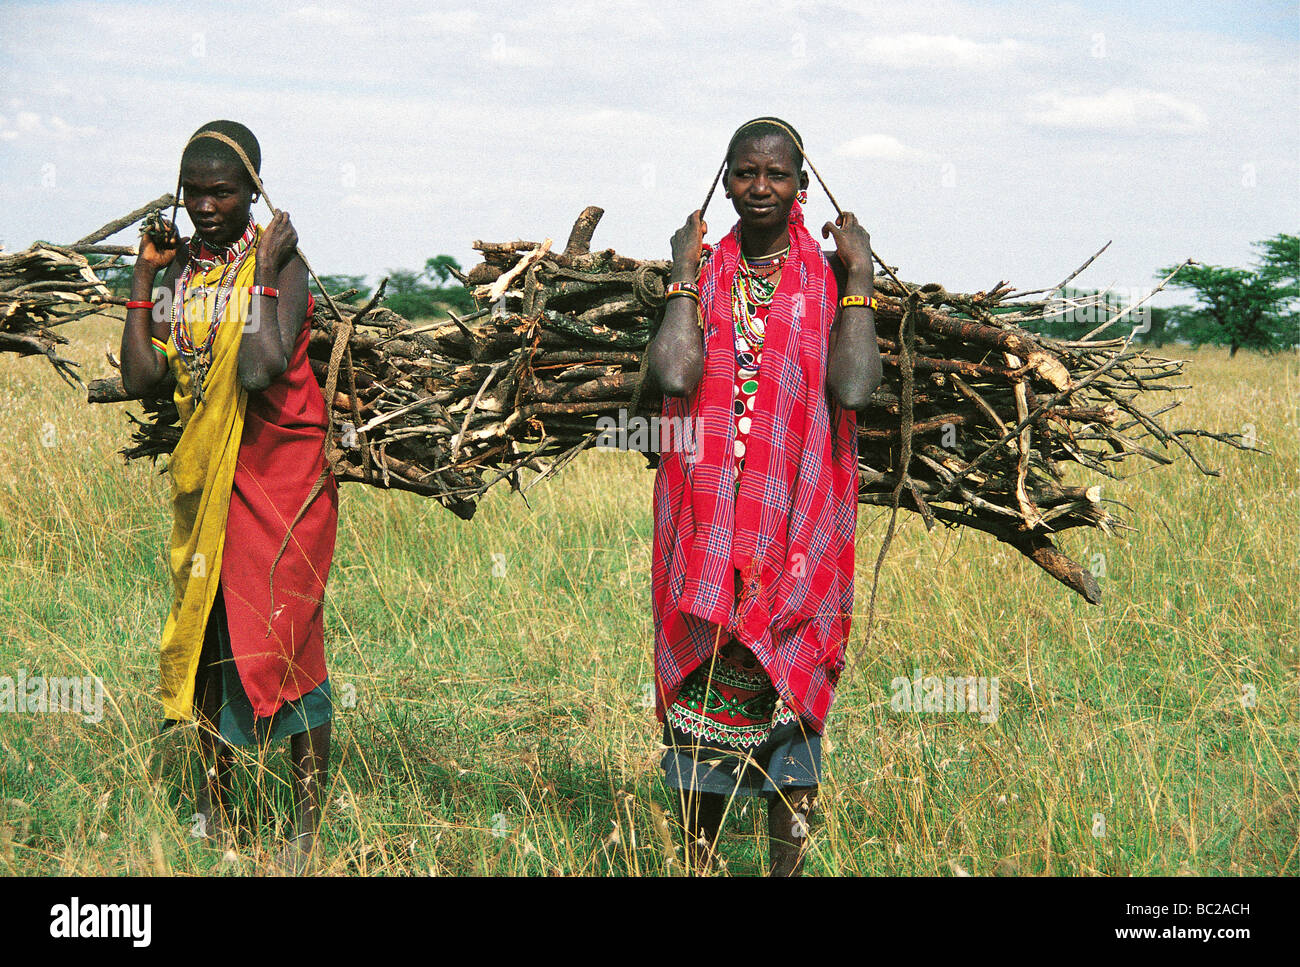 Masaï transporter le bois des plaines Aitong près de Masai Mara National Reserve Kenya Afrique de l'Est Banque D'Images